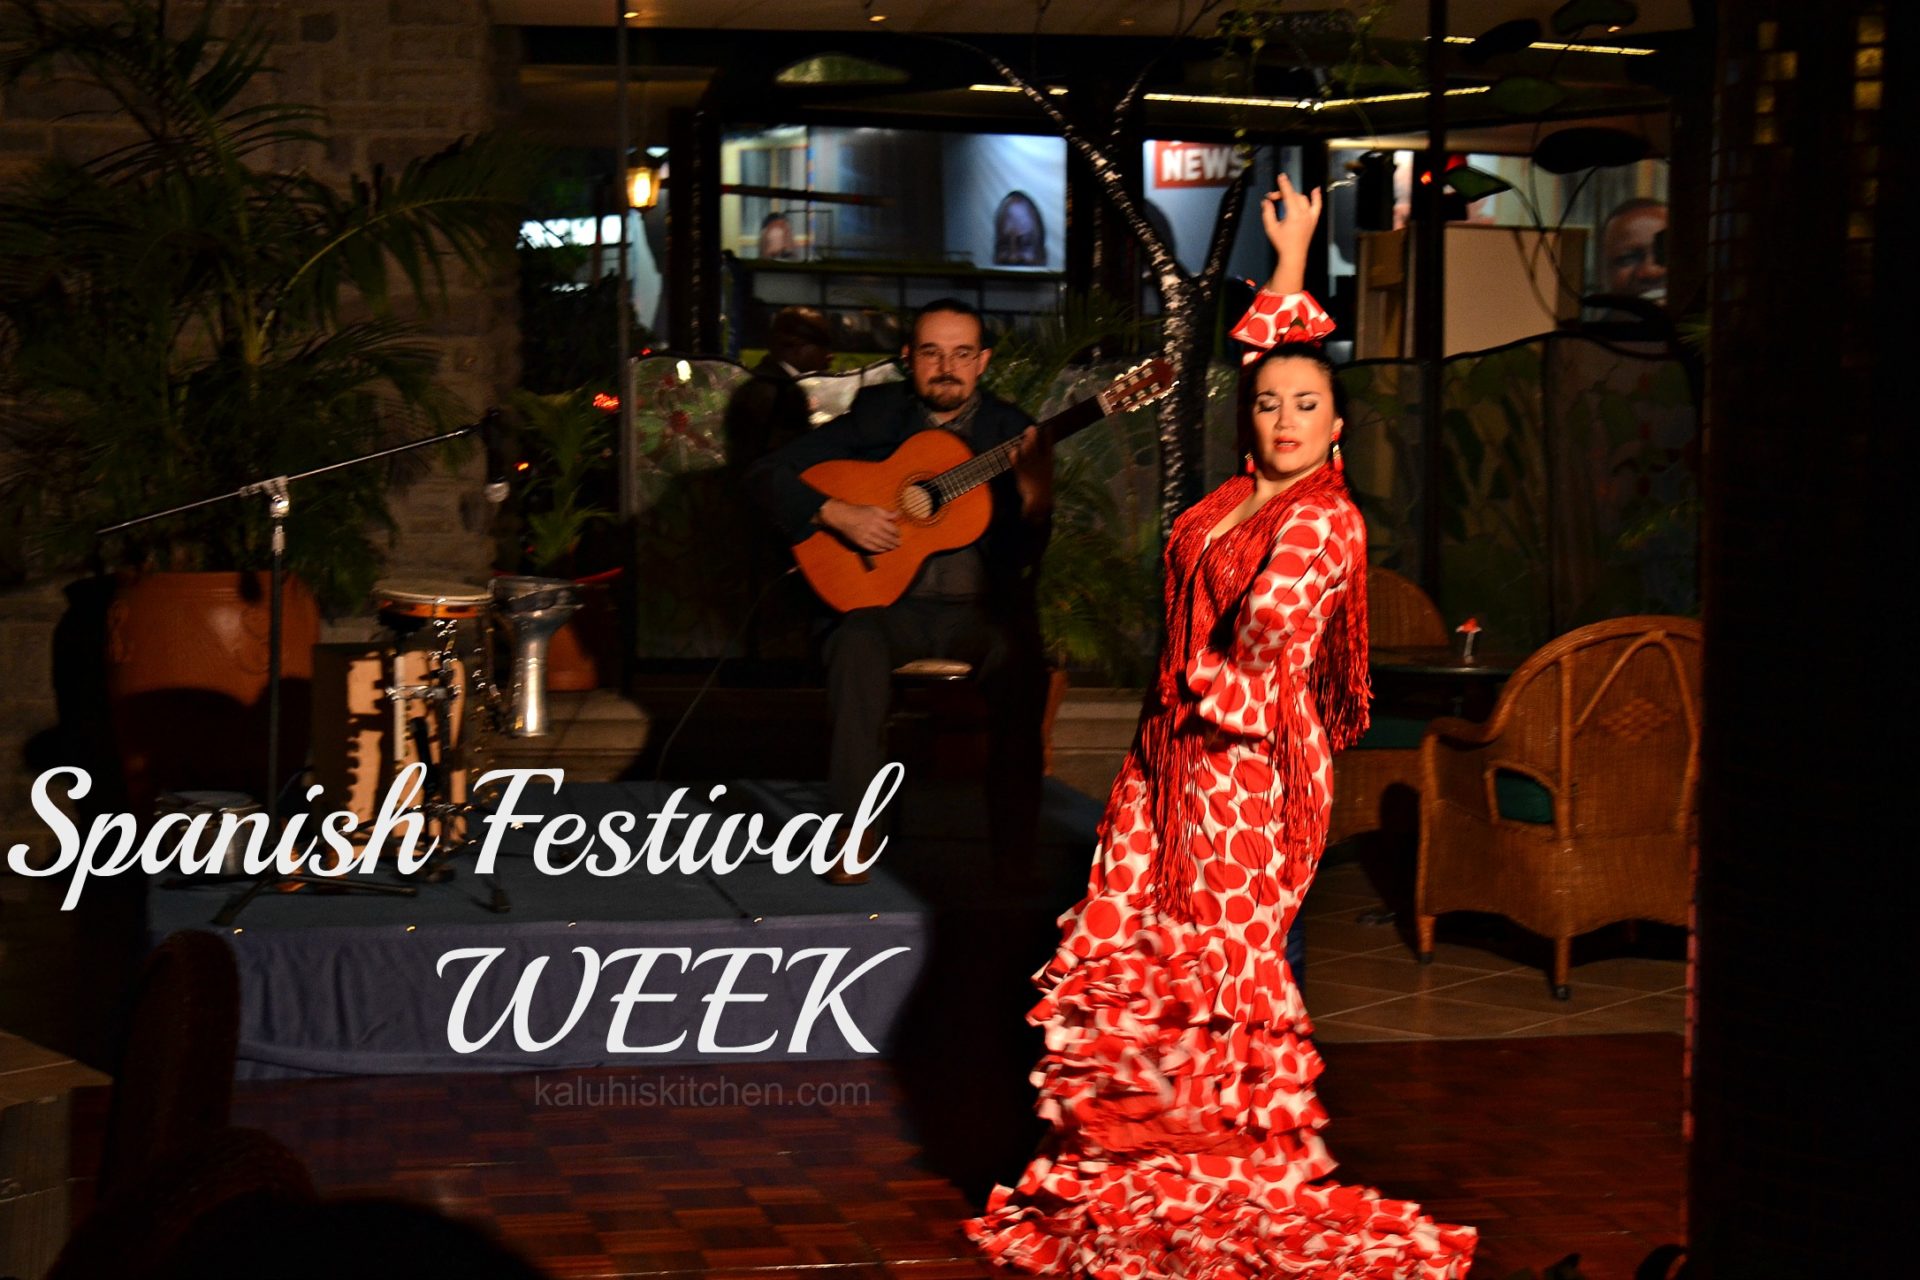 spanish festival week nairobi